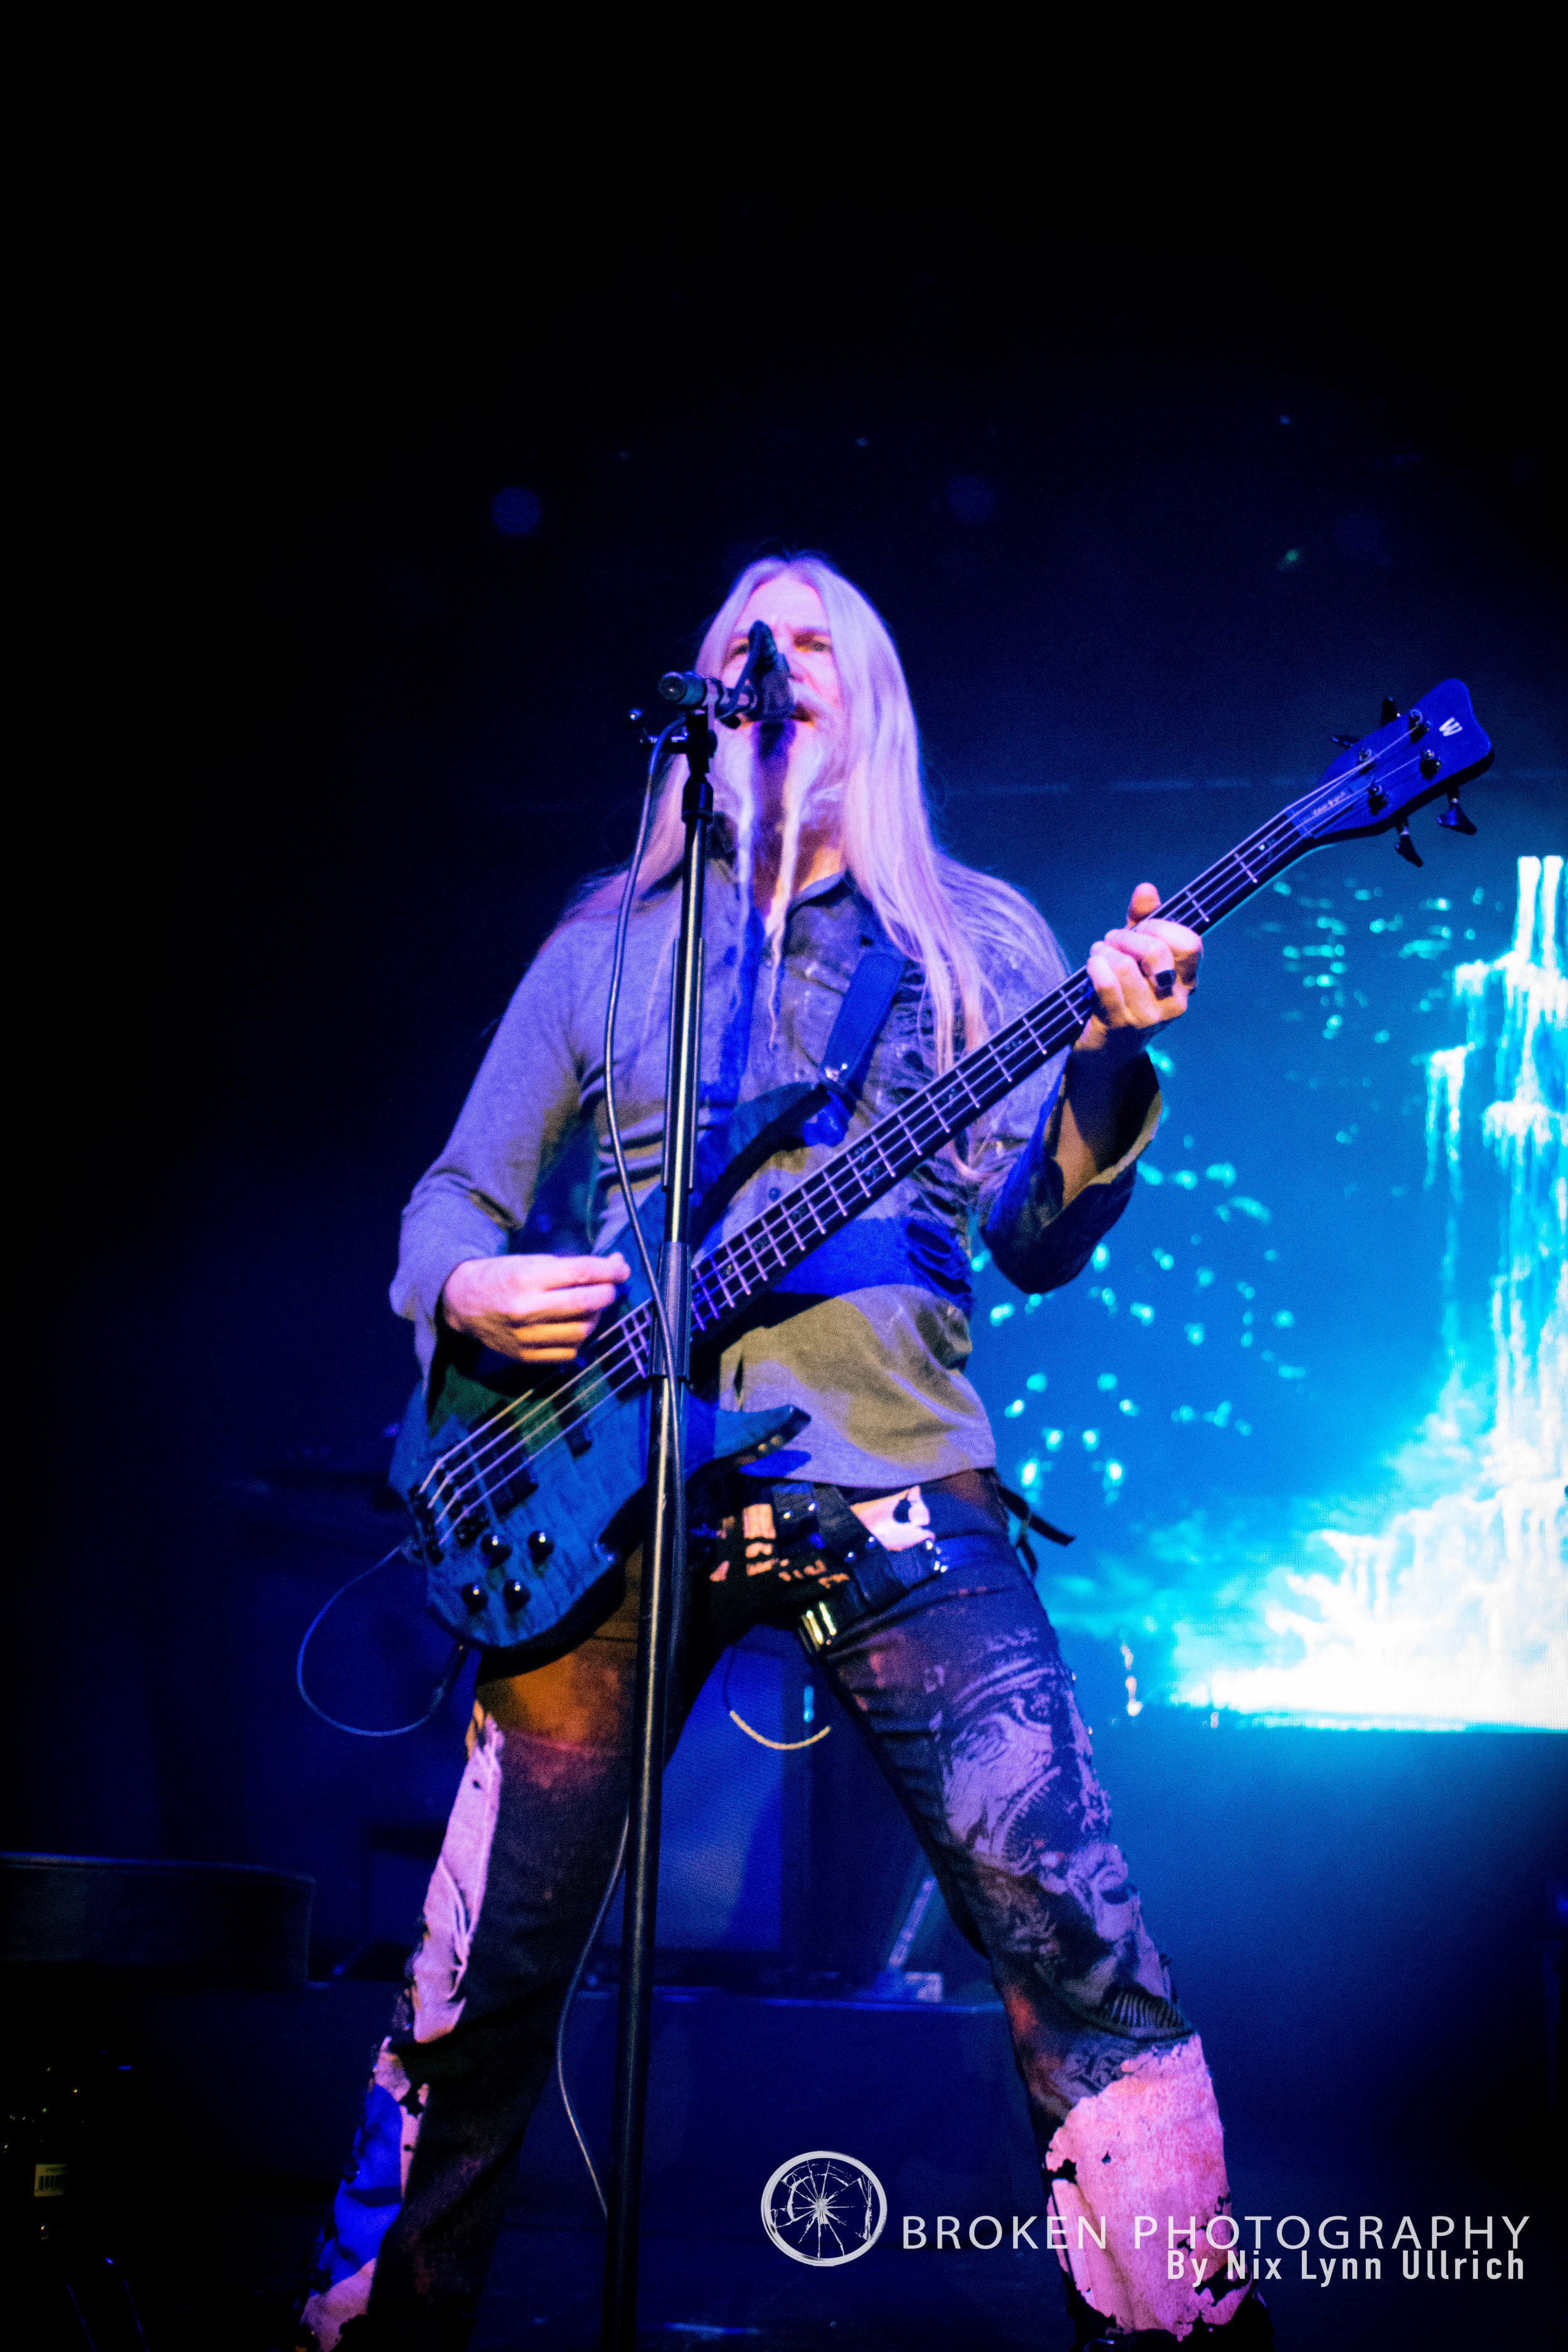 Marco Hietala of Nightwish